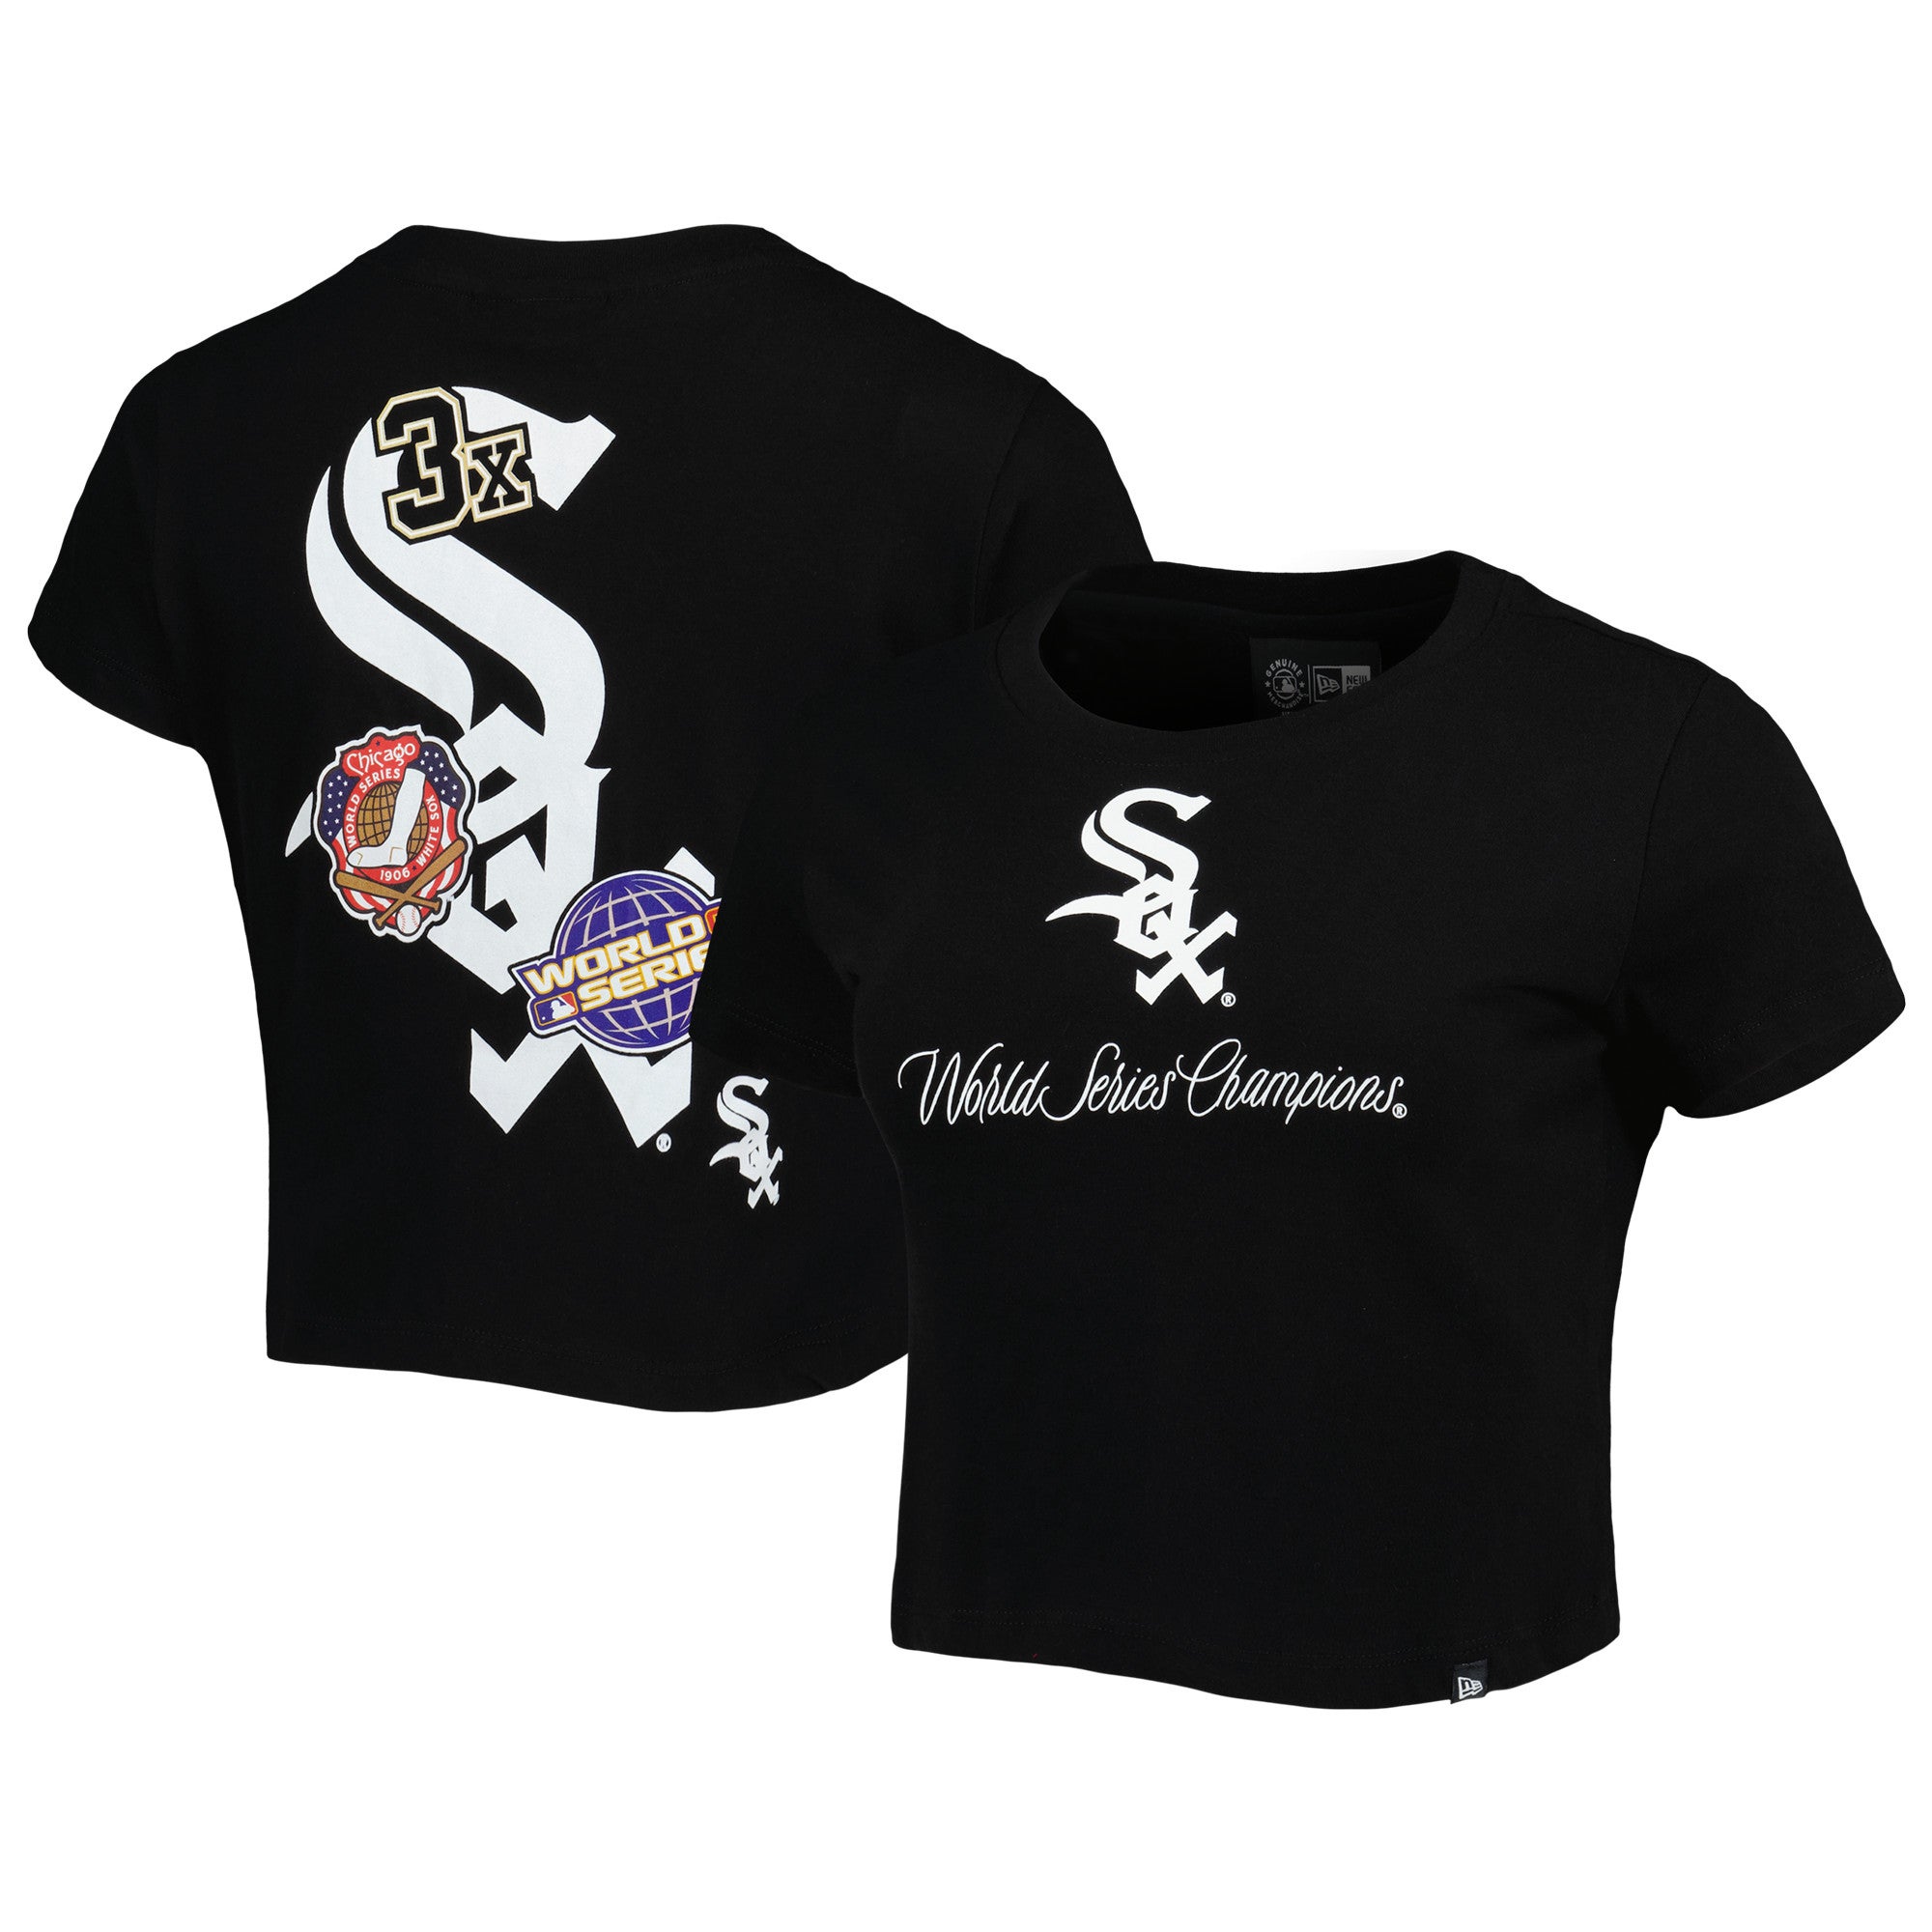 New Era World Champs White Sox T-Shirt